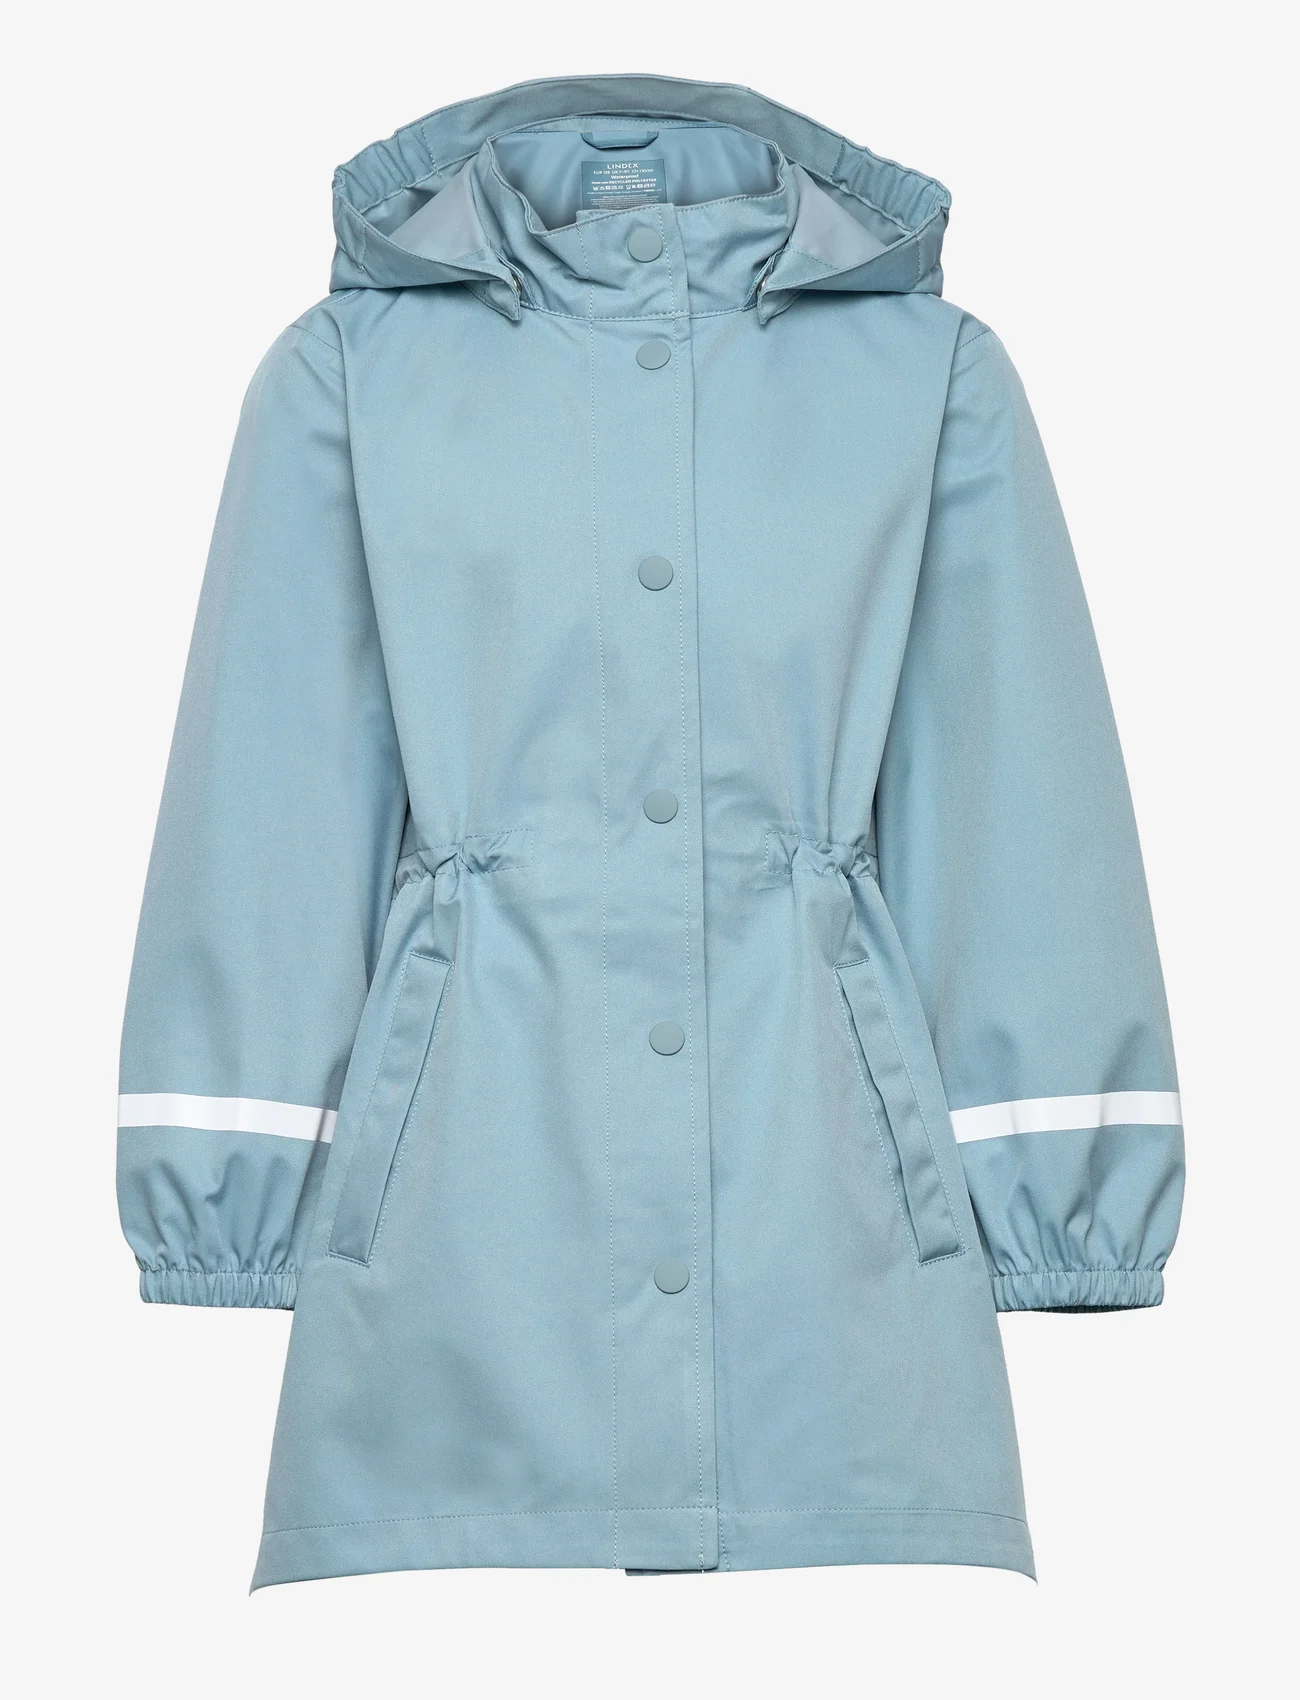 Lindex - Jacket rain coat - kurtki - dusty blue - 0